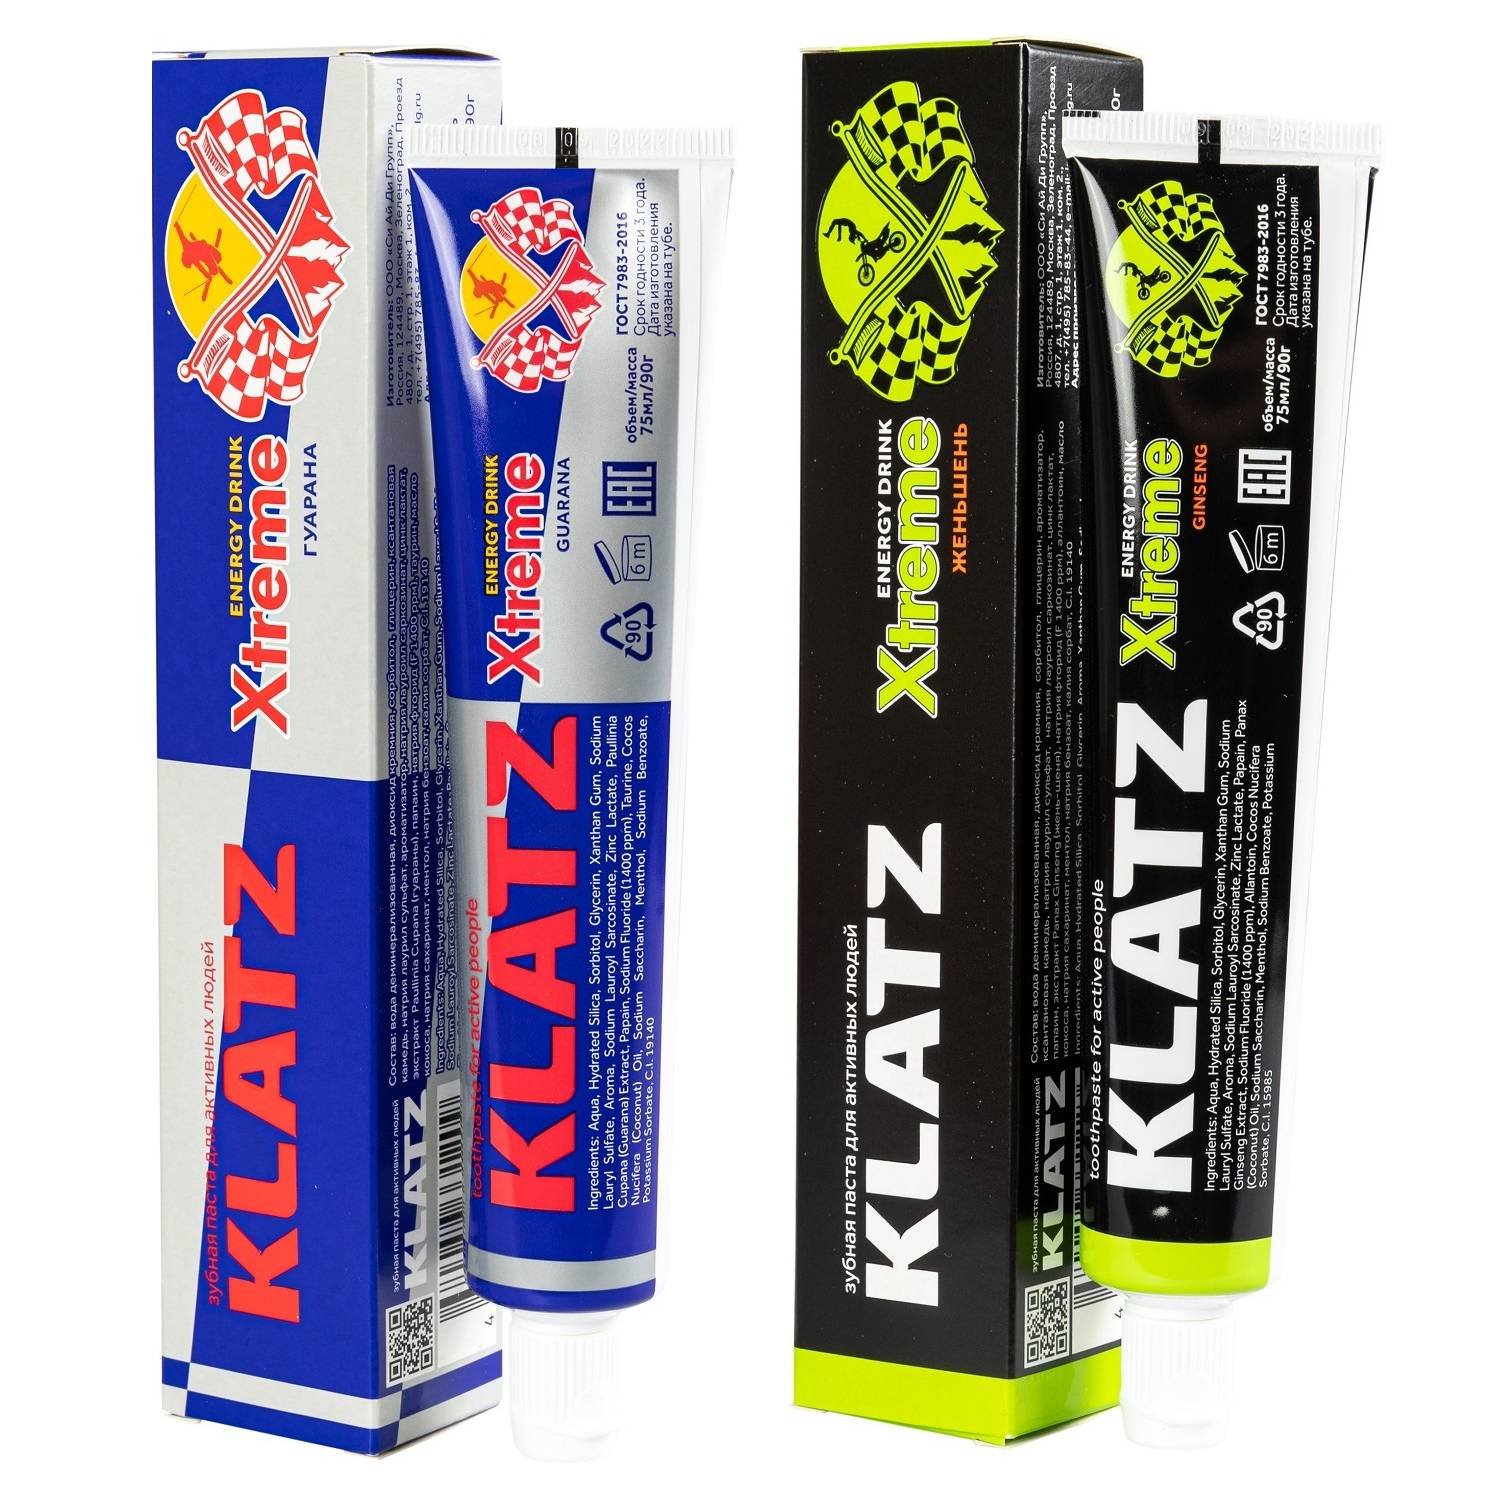 Klatz Набор зубных паст Xtreme Energy Drink: гуарана 75 мл + женьшень 75 мл (Klatz, Xtreme Energy Drink) цена и фото